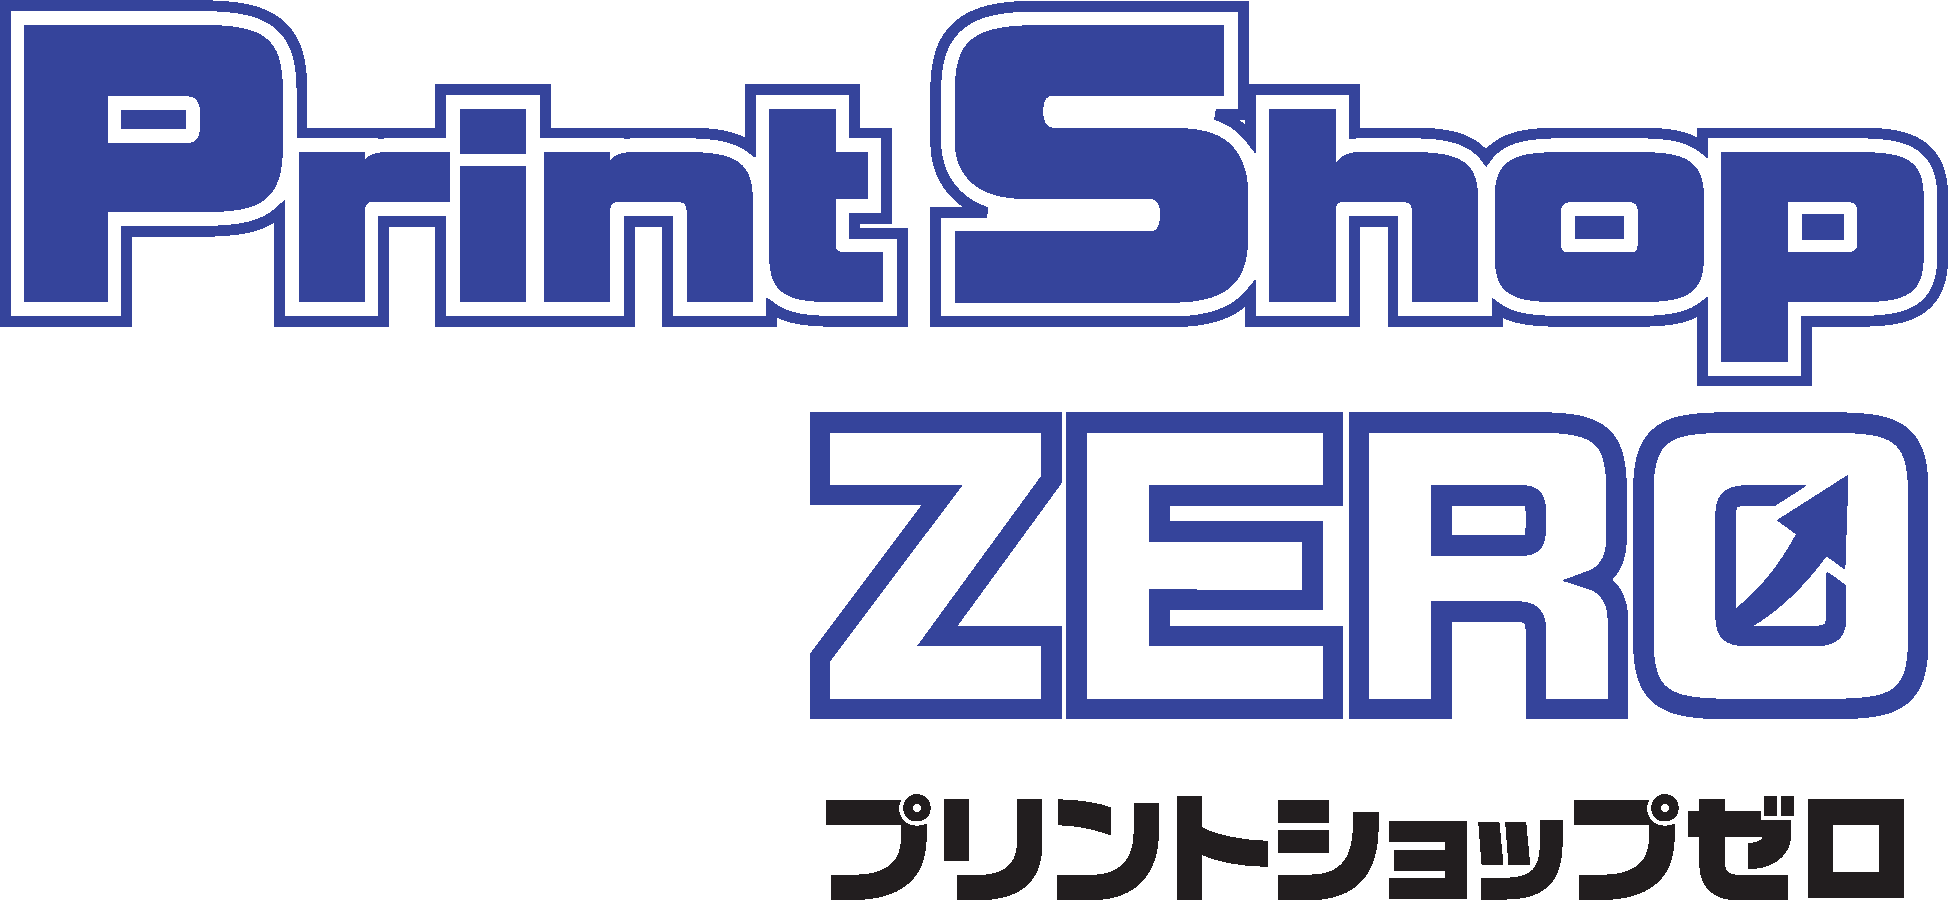 Print-Shop-ZERO　プリントショップゼロ